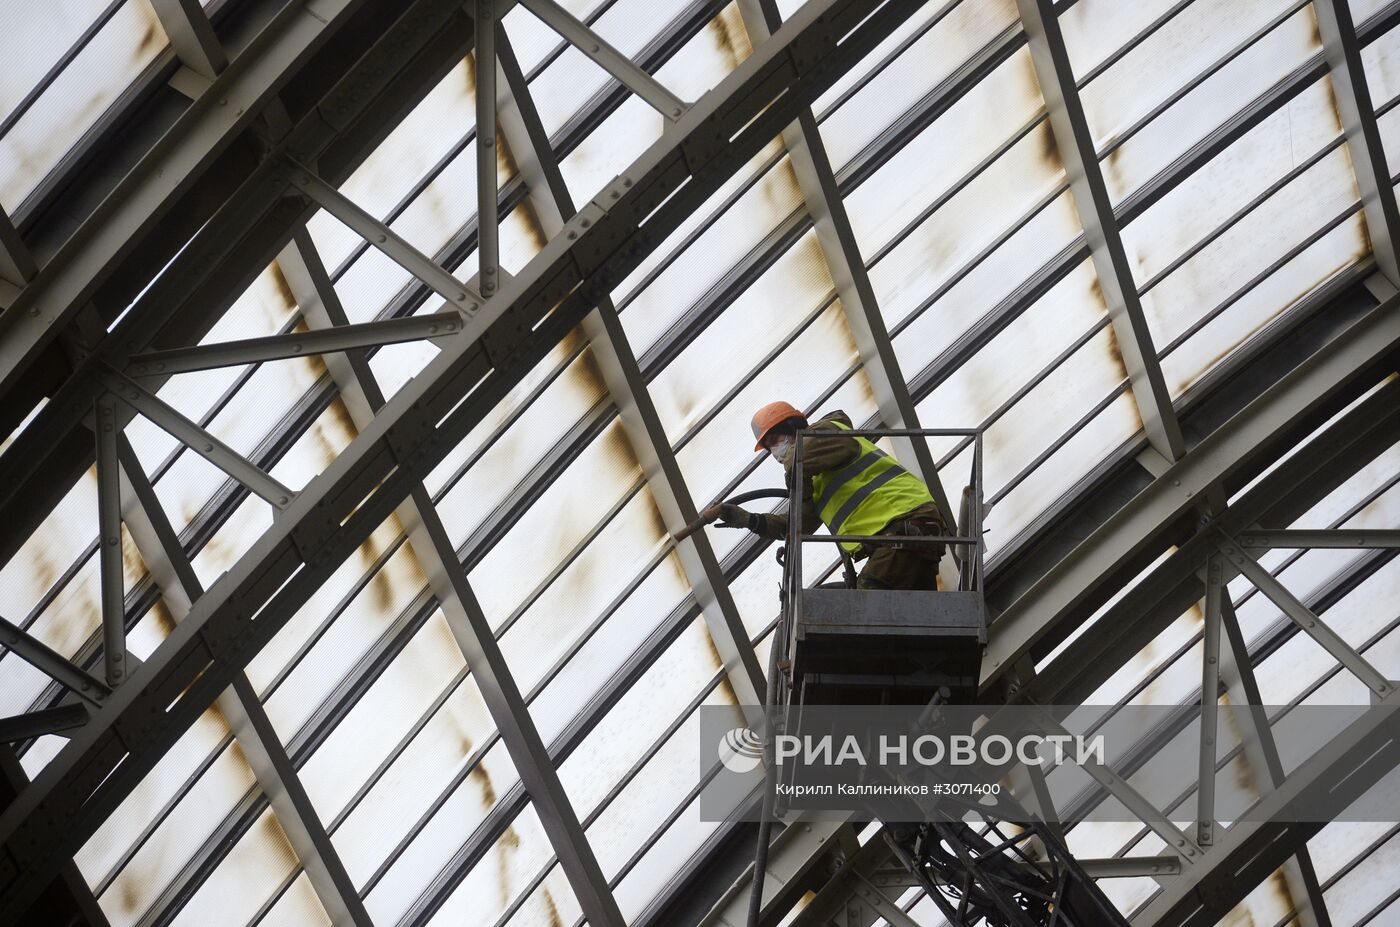 Мэр Москвы С.Собянин осмотрел ход реконструкции павильона "Космос" на ВДНХ